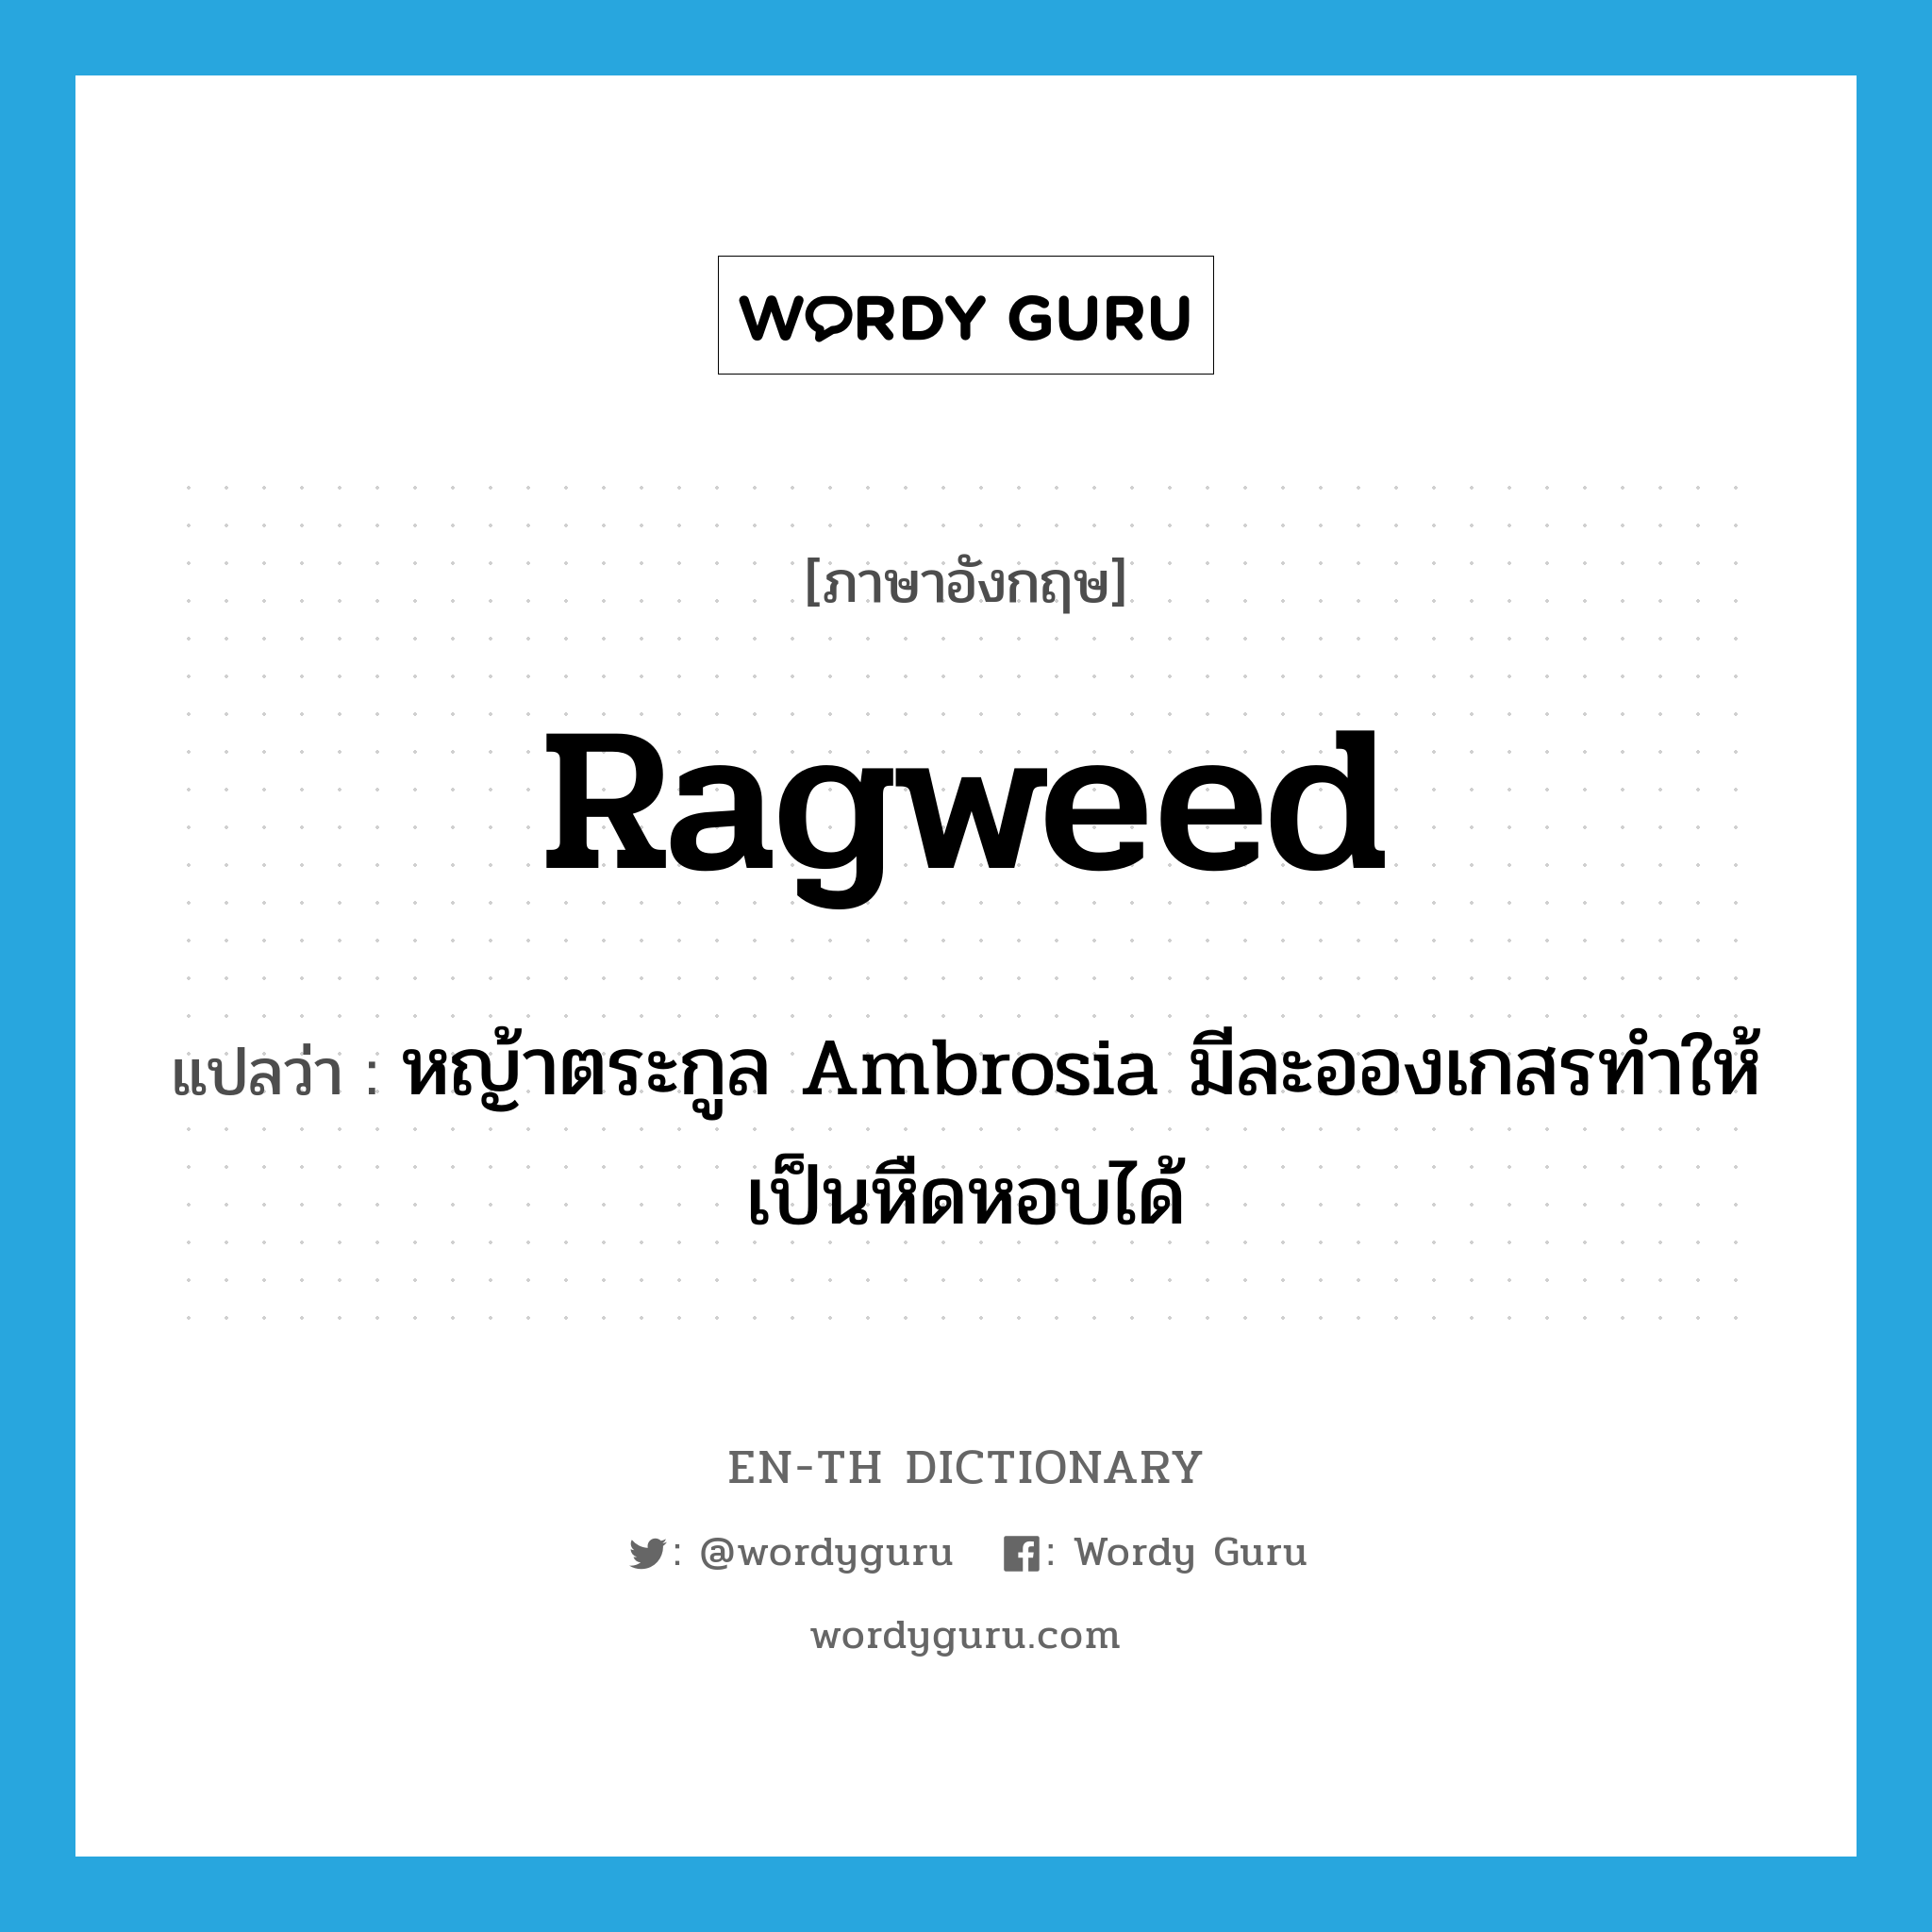 หญ้าตระกูล Ambrosia มีละอองเกสรทำให้เป็นหืดหอบได้ ภาษาอังกฤษ?, คำศัพท์ภาษาอังกฤษ หญ้าตระกูล Ambrosia มีละอองเกสรทำให้เป็นหืดหอบได้ แปลว่า ragweed ประเภท N หมวด N